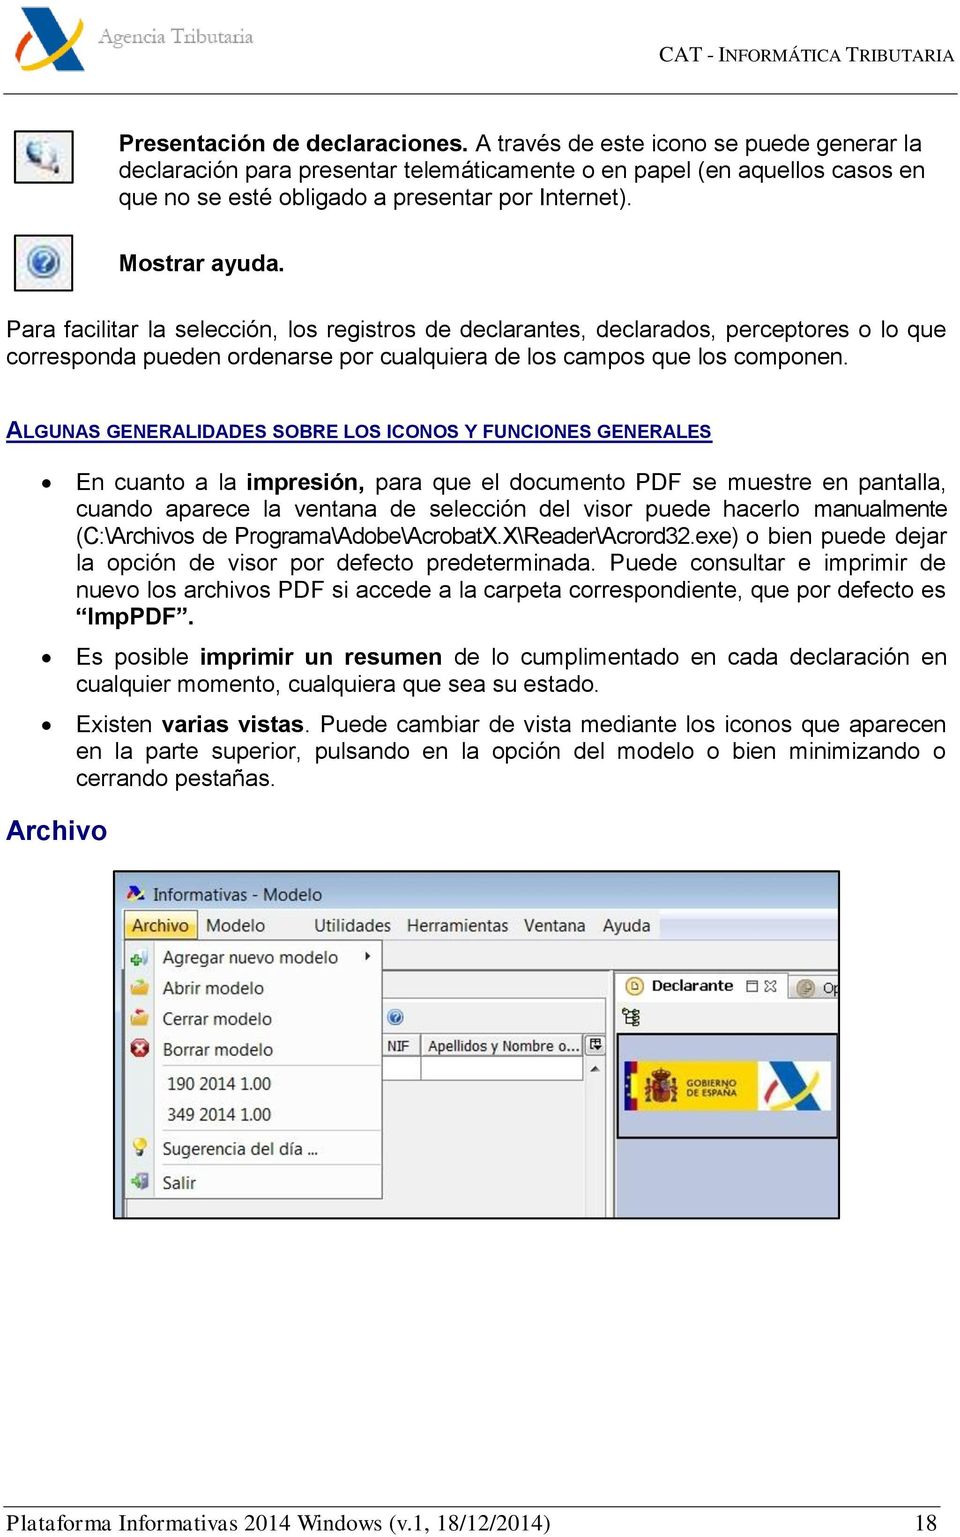 ALGUNAS GENERALIDADES SOBRE LOS ICONOS Y FUNCIONES GENERALES En cuanto a la impresión, para que el documento PDF se muestre en pantalla, cuando aparece la ventana de selección del visor puede hacerlo